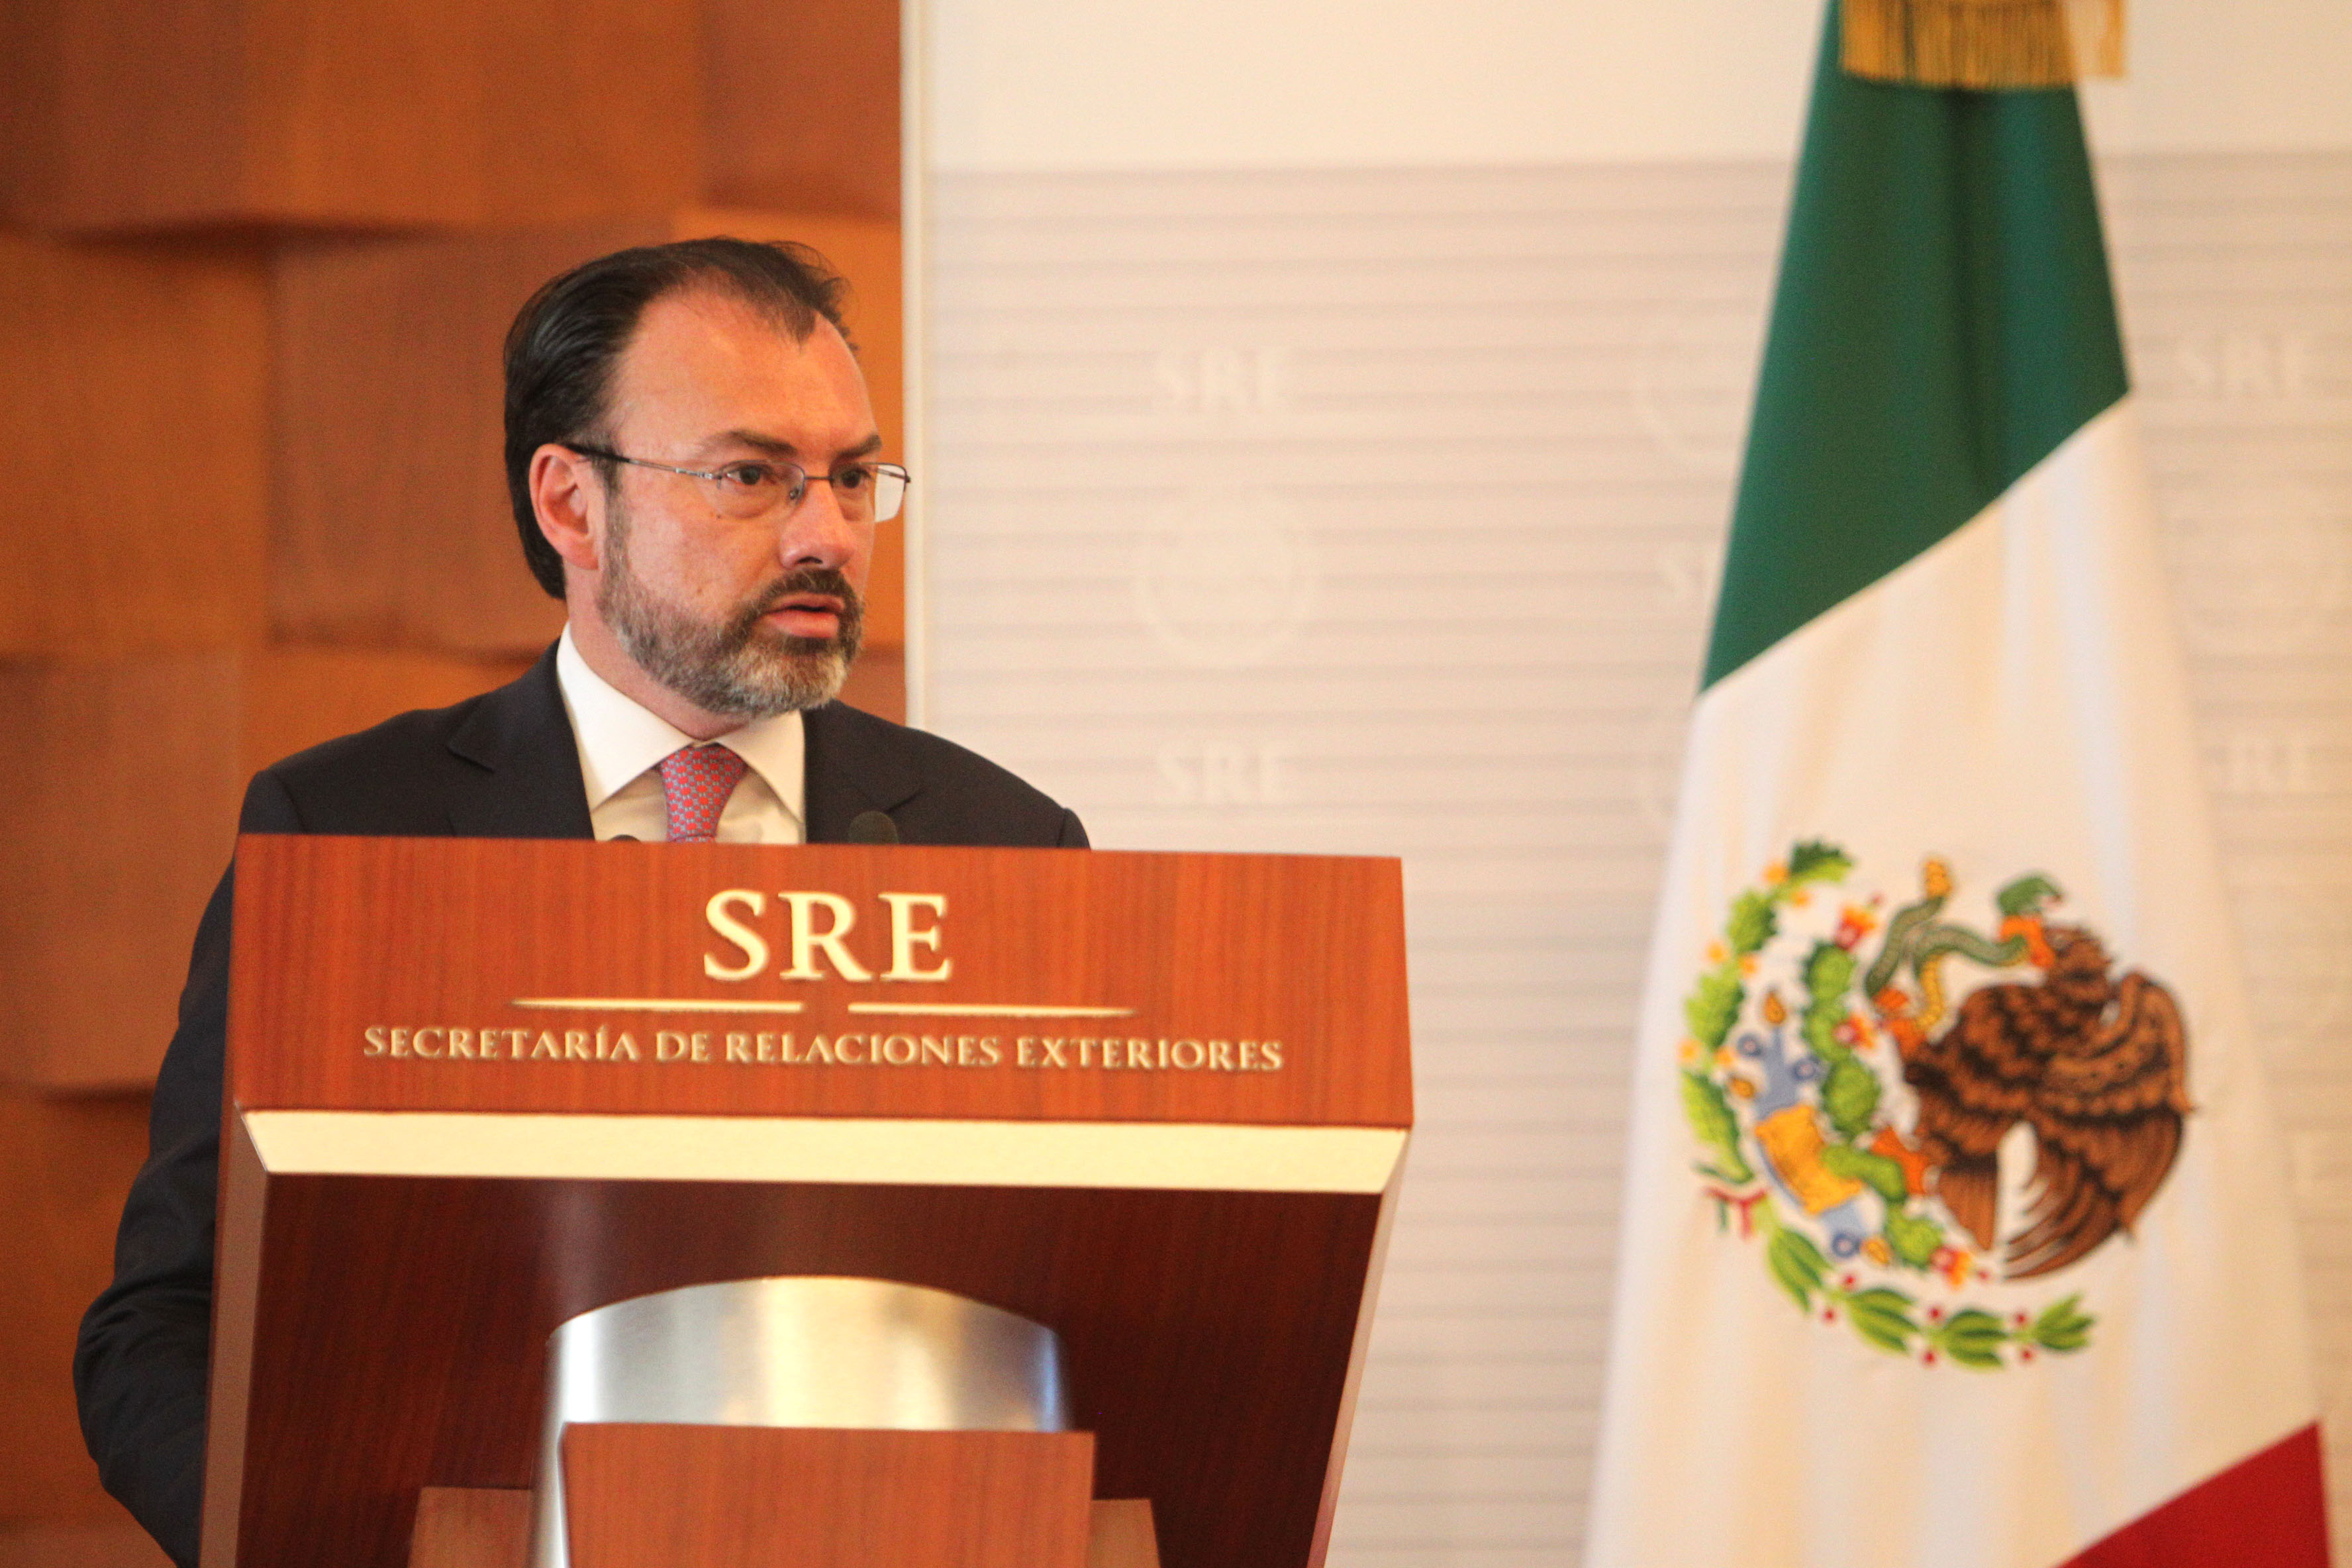 Por soberanía y dignidad nacional, México no pagará el muro, reitera Videgaray